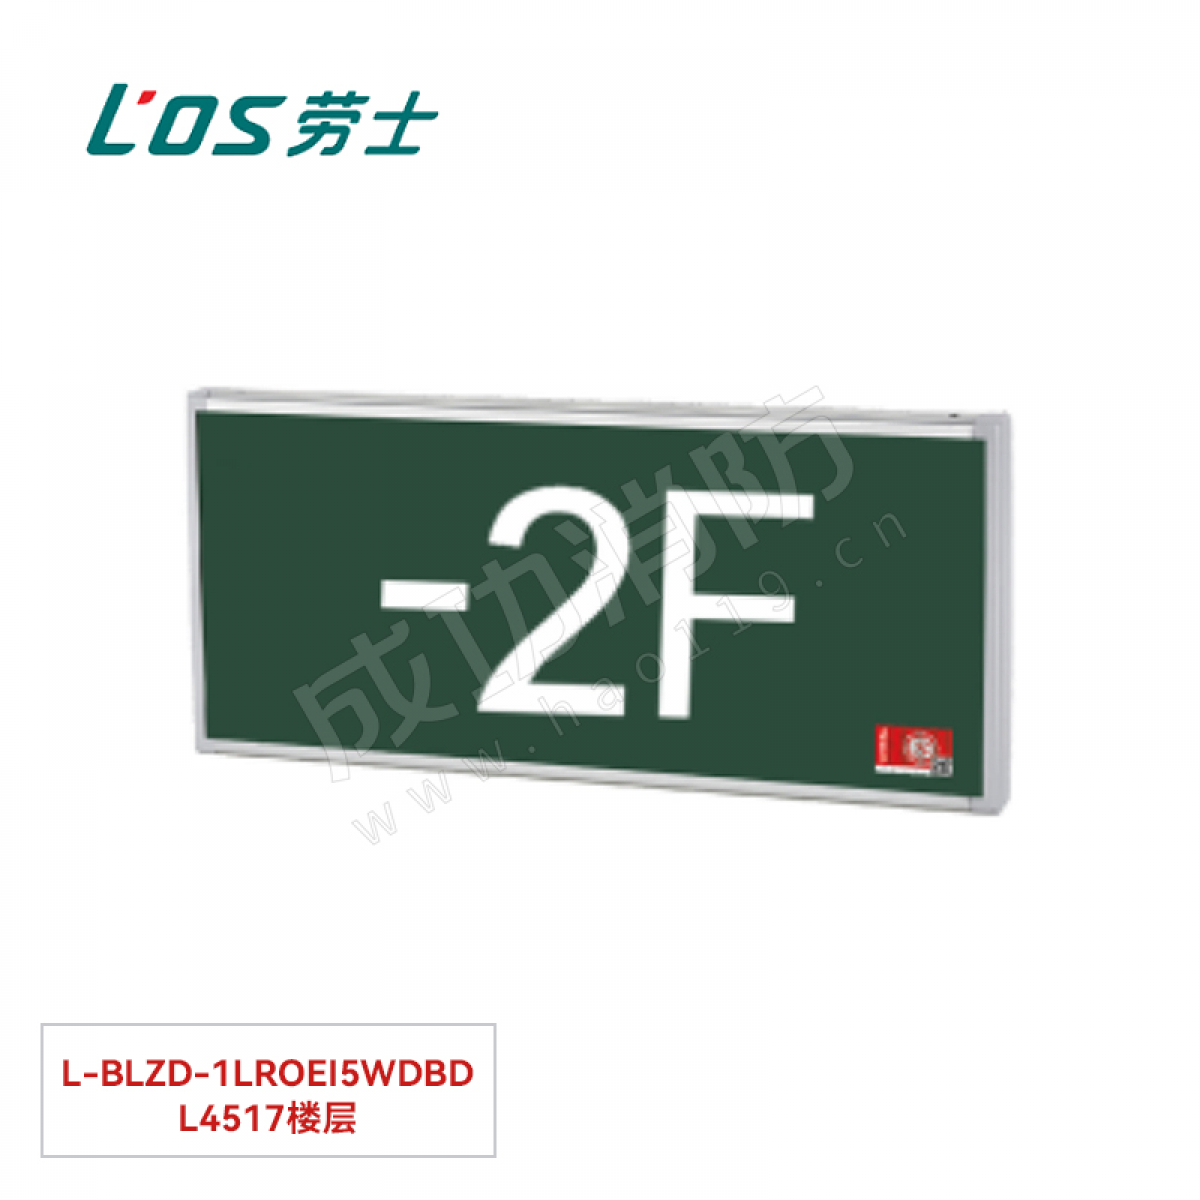 劳士 消防应急标志灯(壁挂安装) L-BLZD-1LROEⅠ5WDBD L4517楼层